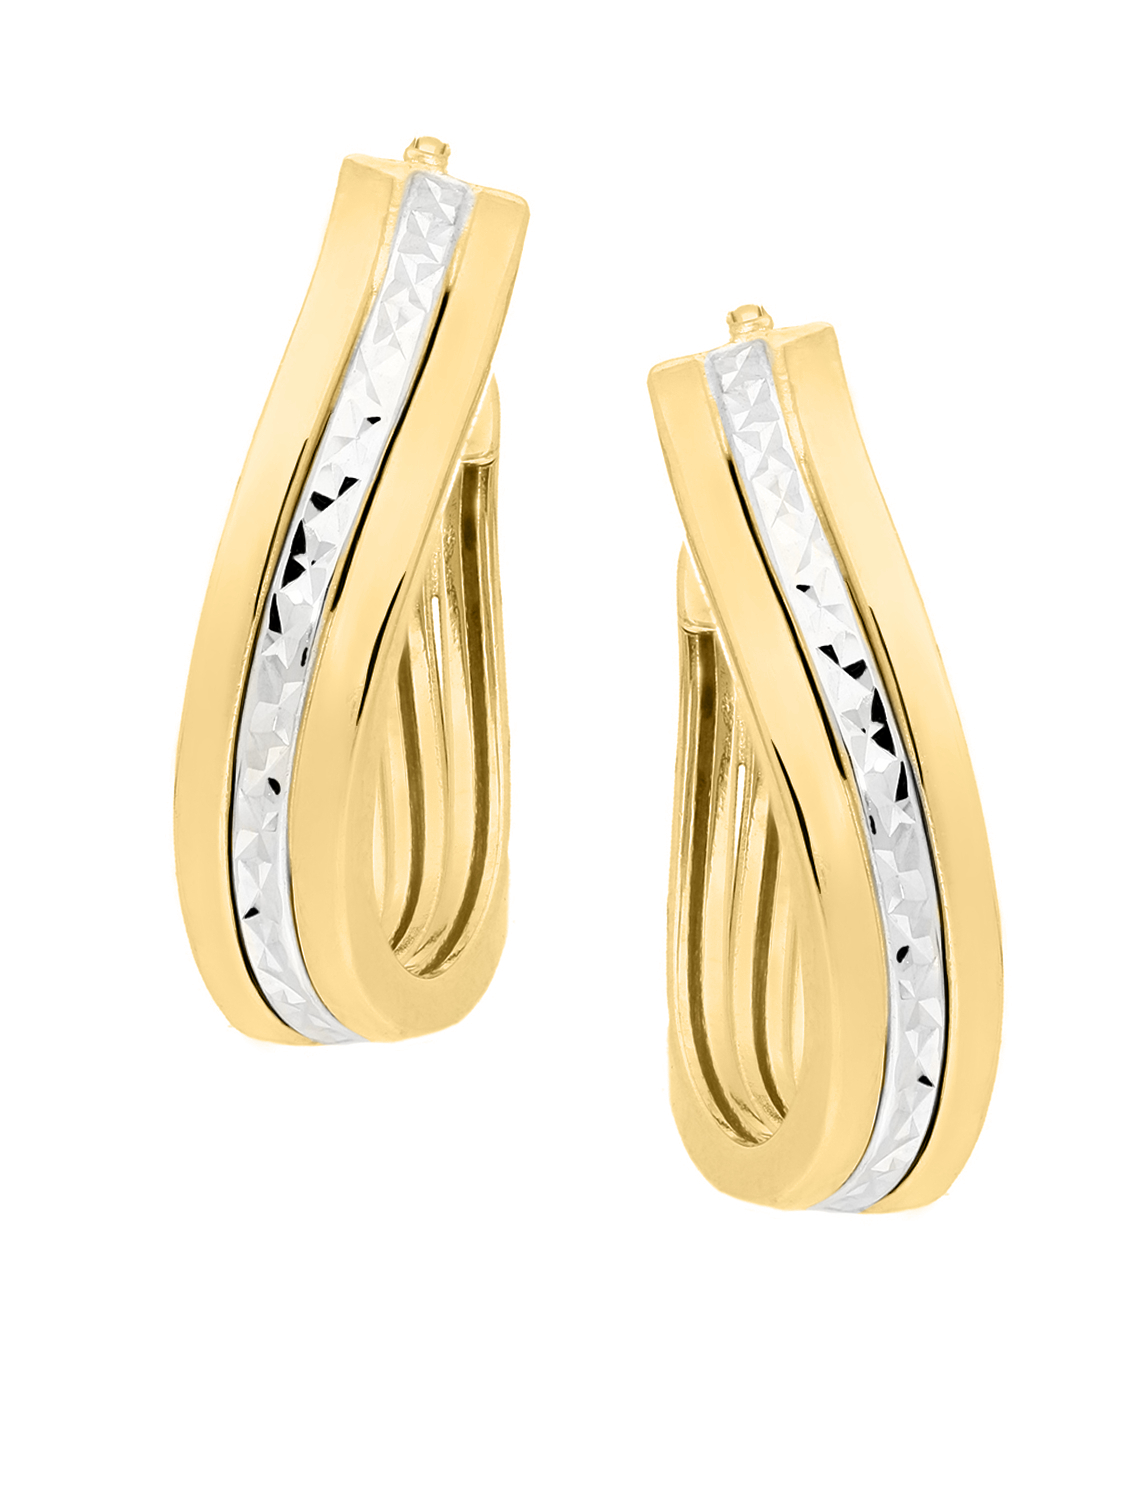 Damencreolen aus echtem Gelbgold & Weißgold mit Diamantierung - Eartwist | Produktansicht